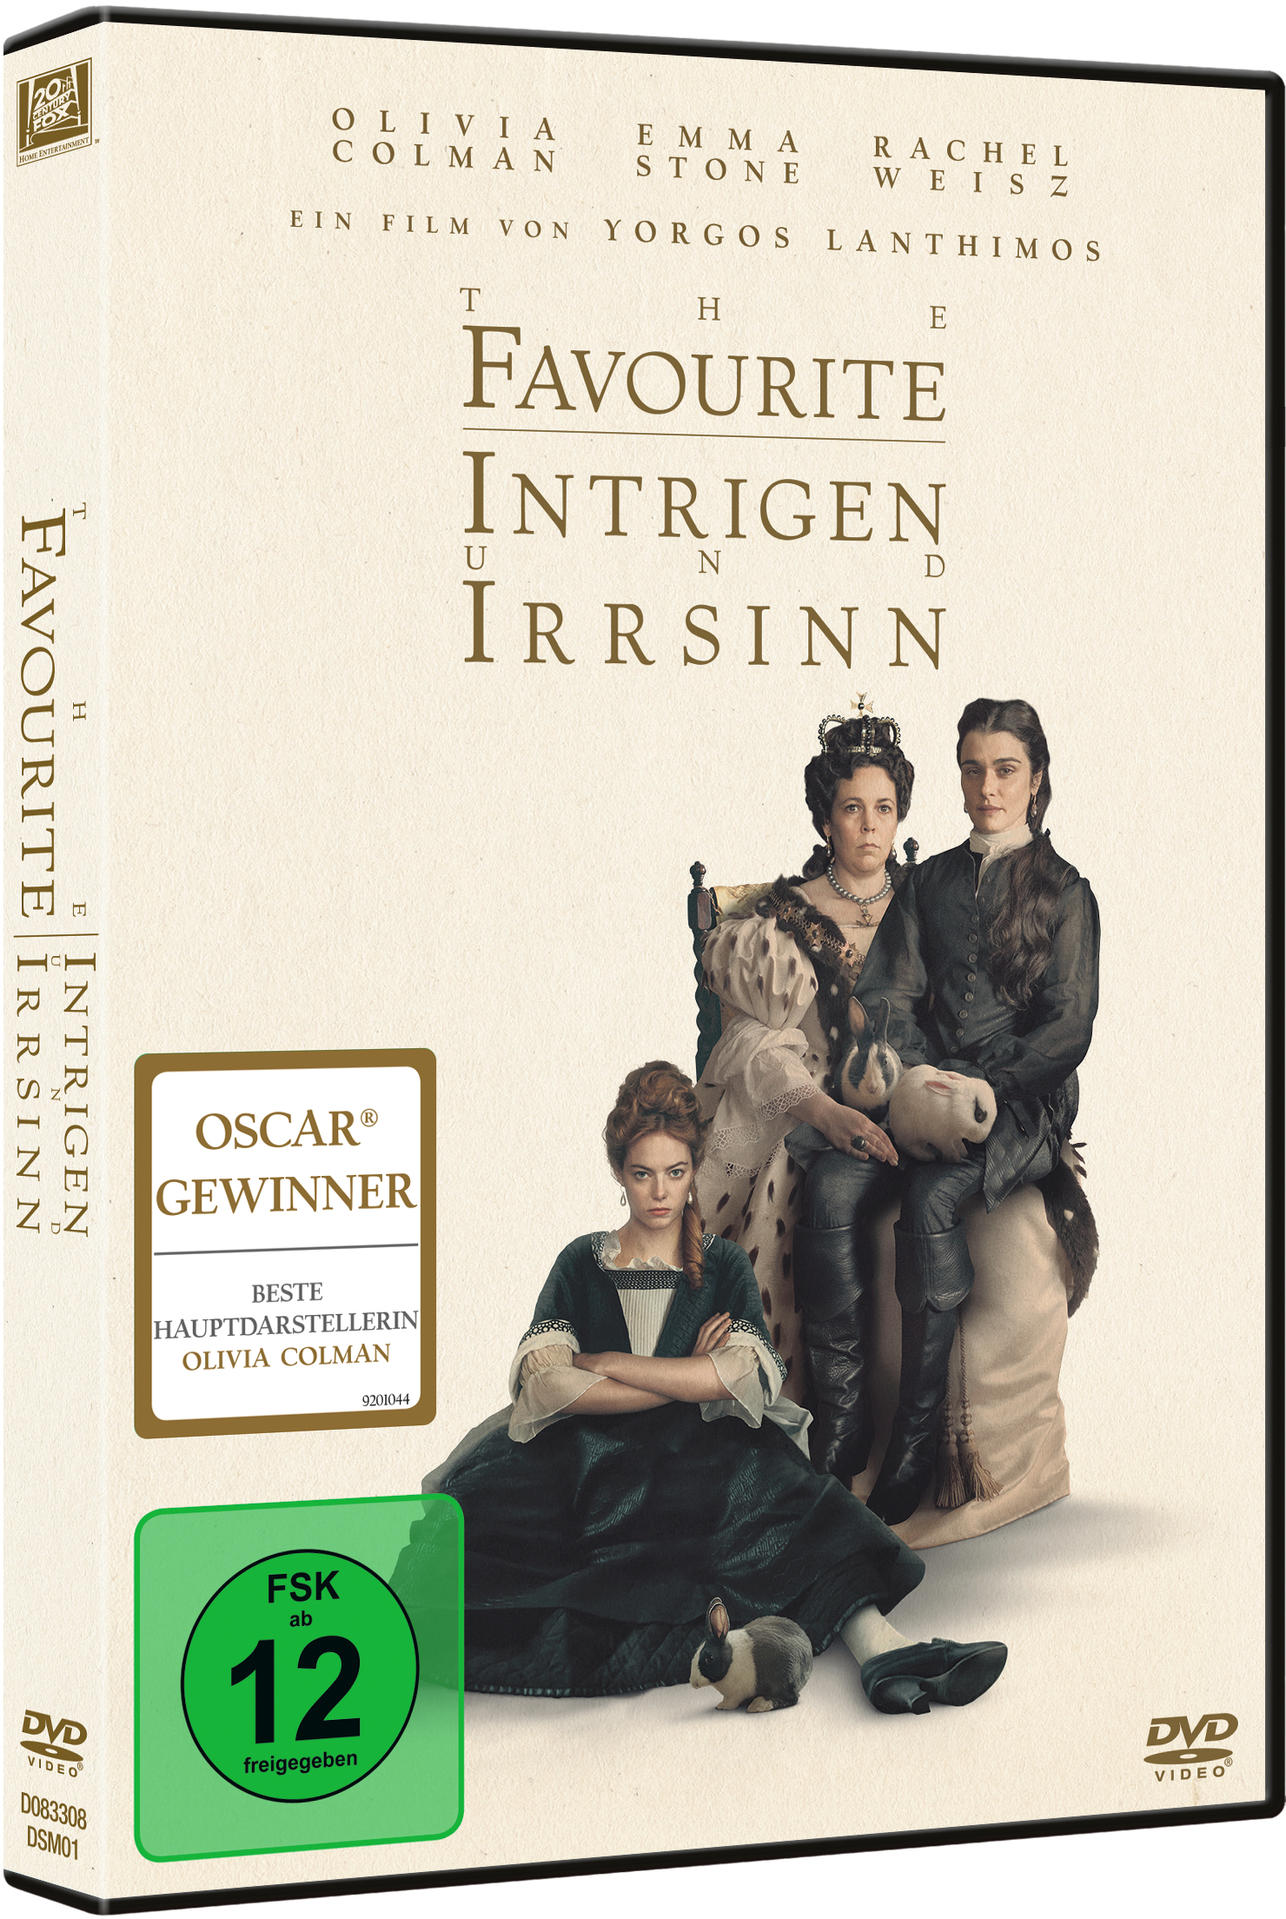 - Favourite und Intrigen DVD The Irrsinn